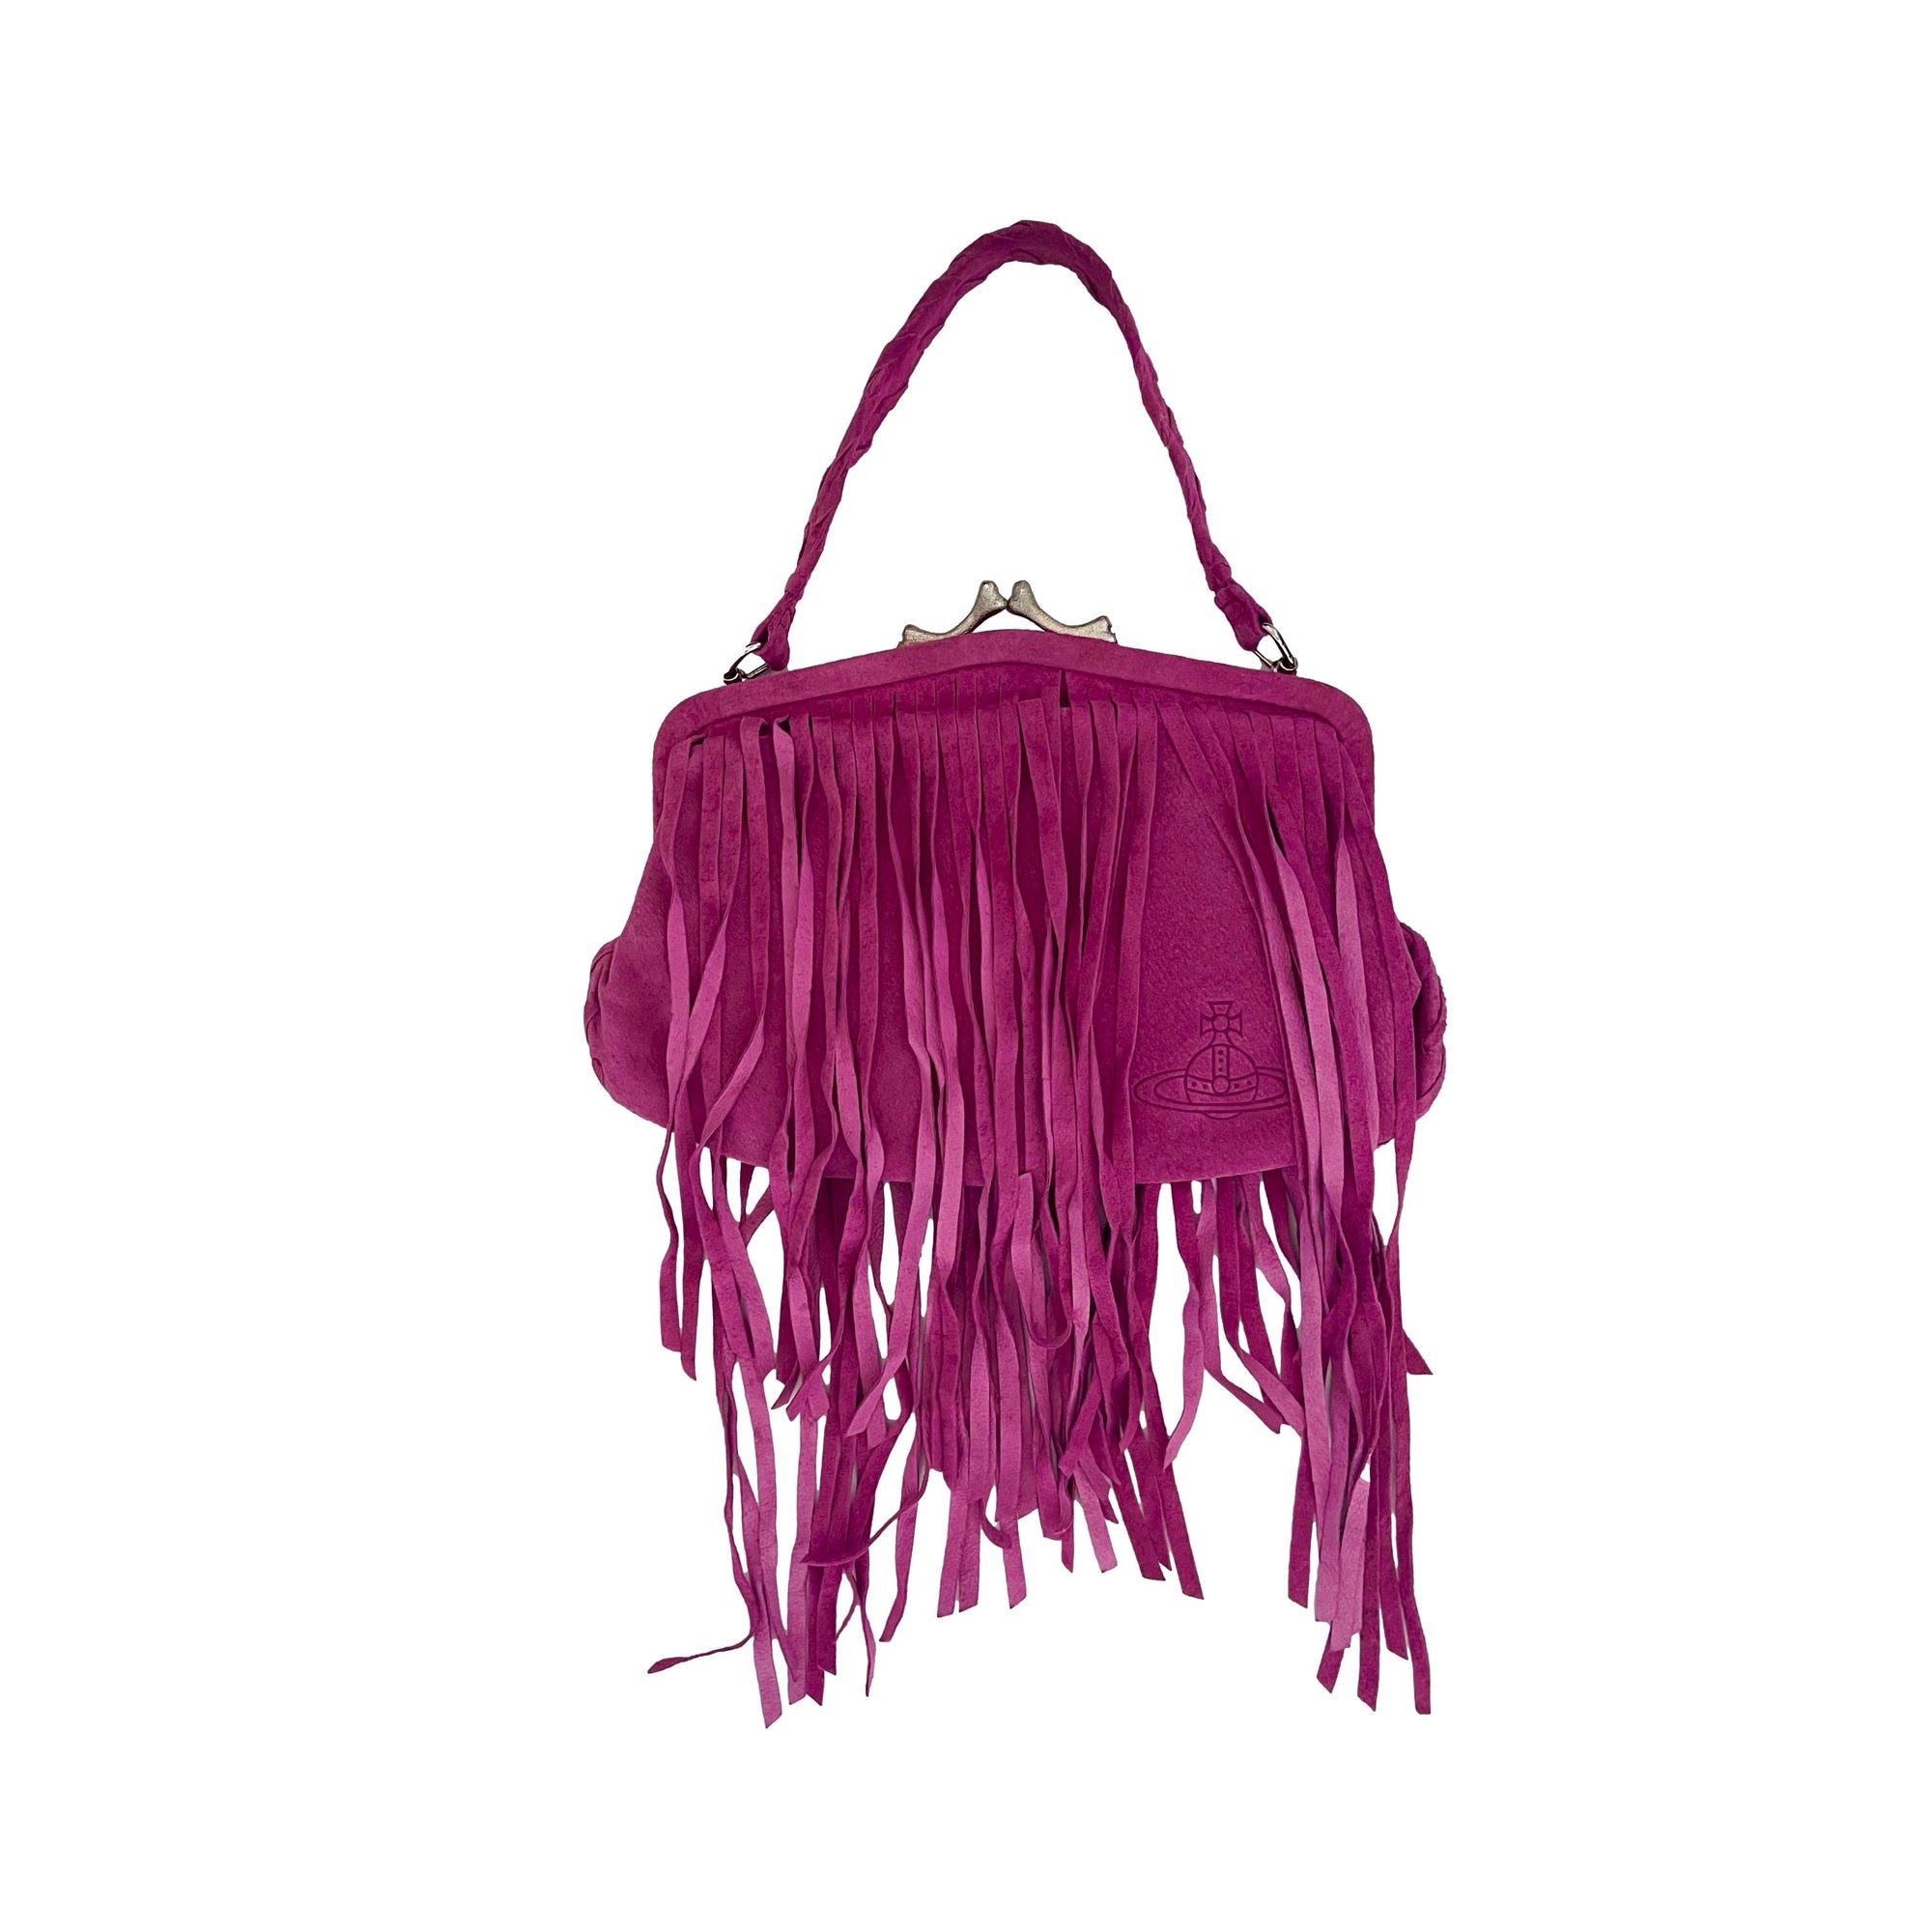 Vivienne Westwood Pink Suede Bone Lock Bag - Handbags